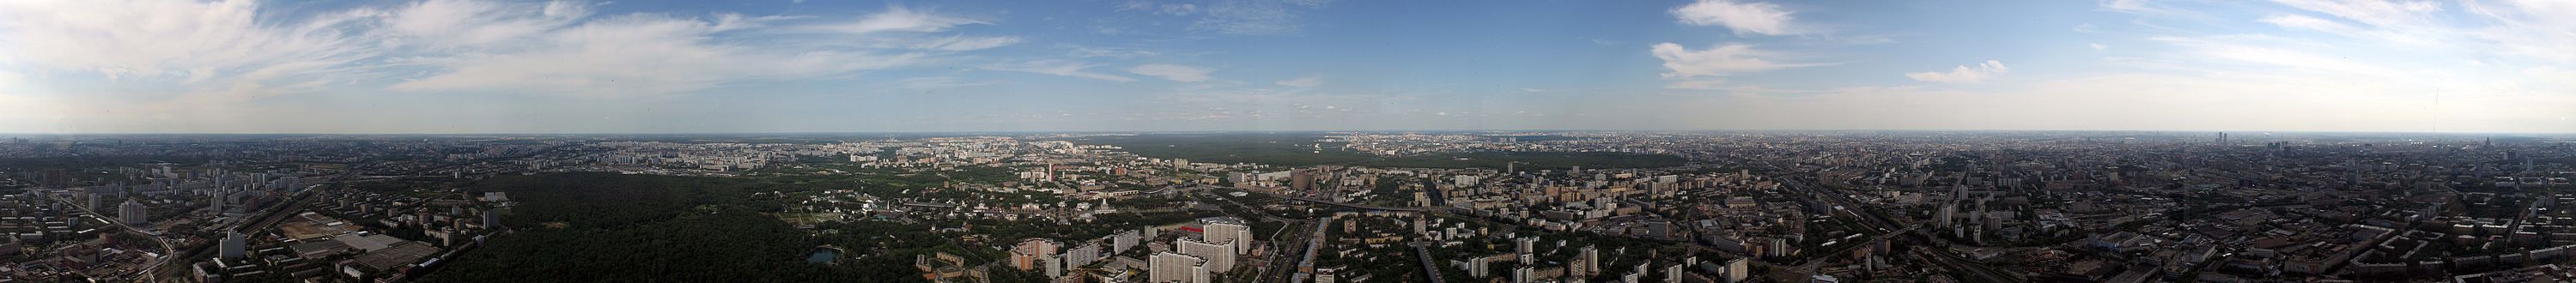 Горизонтальная панорама со смотровой площадки Останкинской телебашни